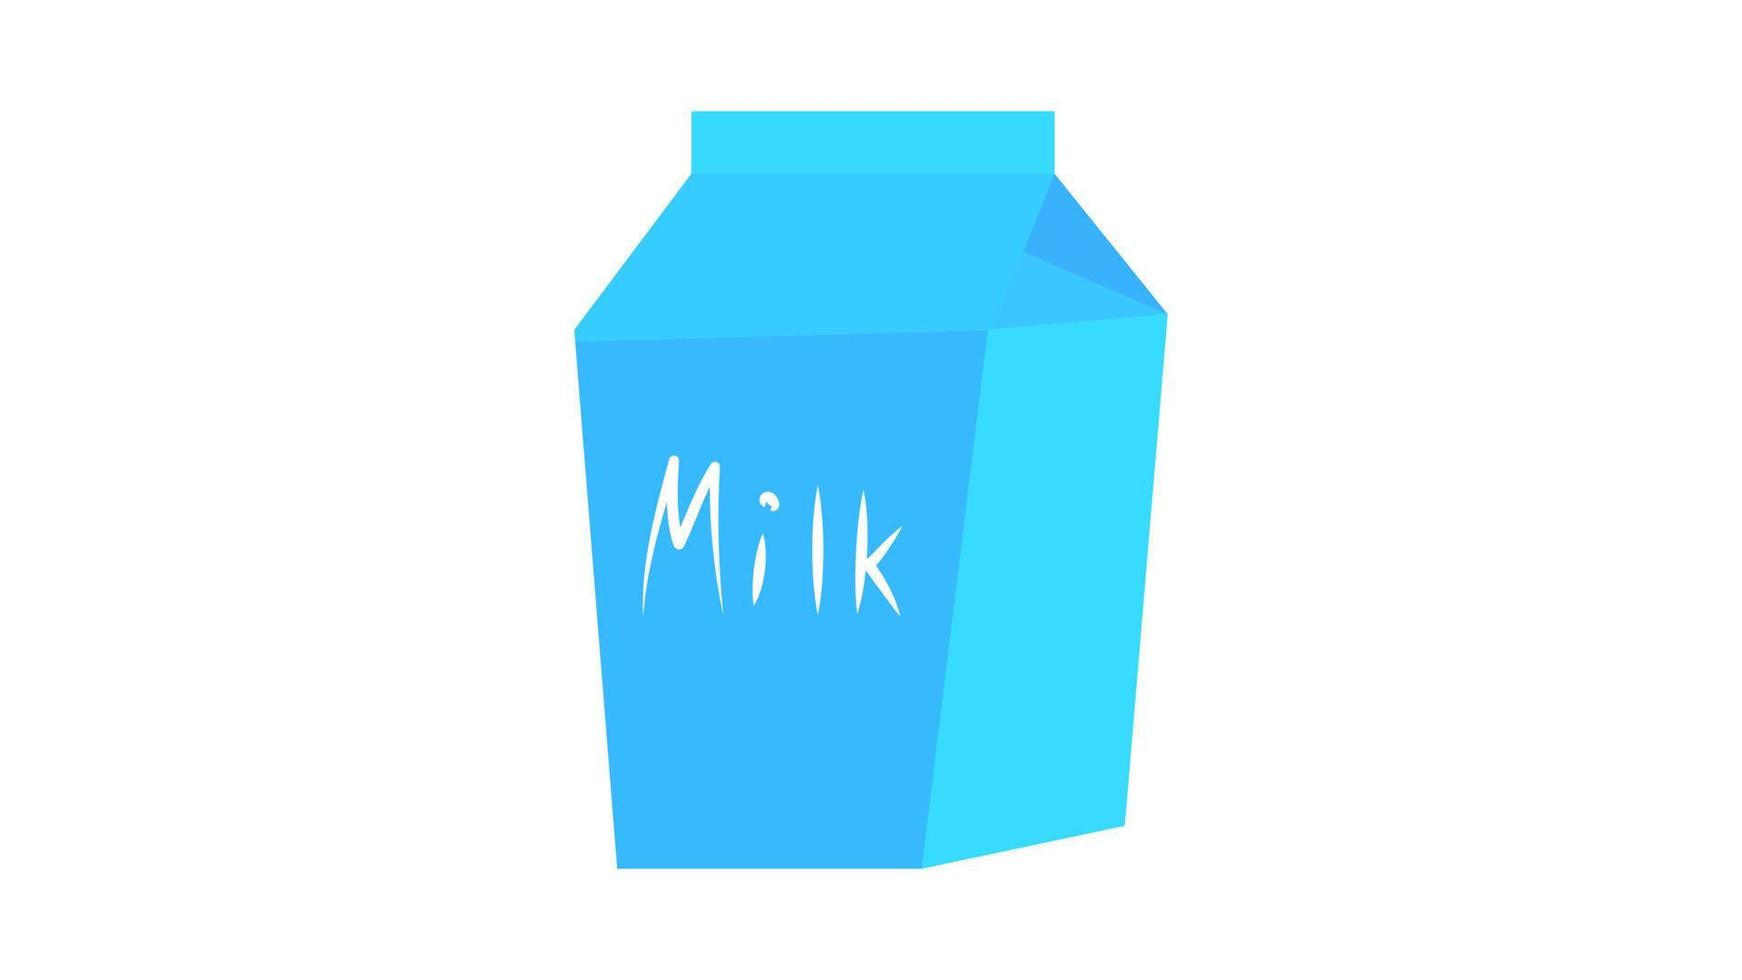 Milchgiebelkarton hautnah. kuhmilchpaket isoliert auf grau vektor